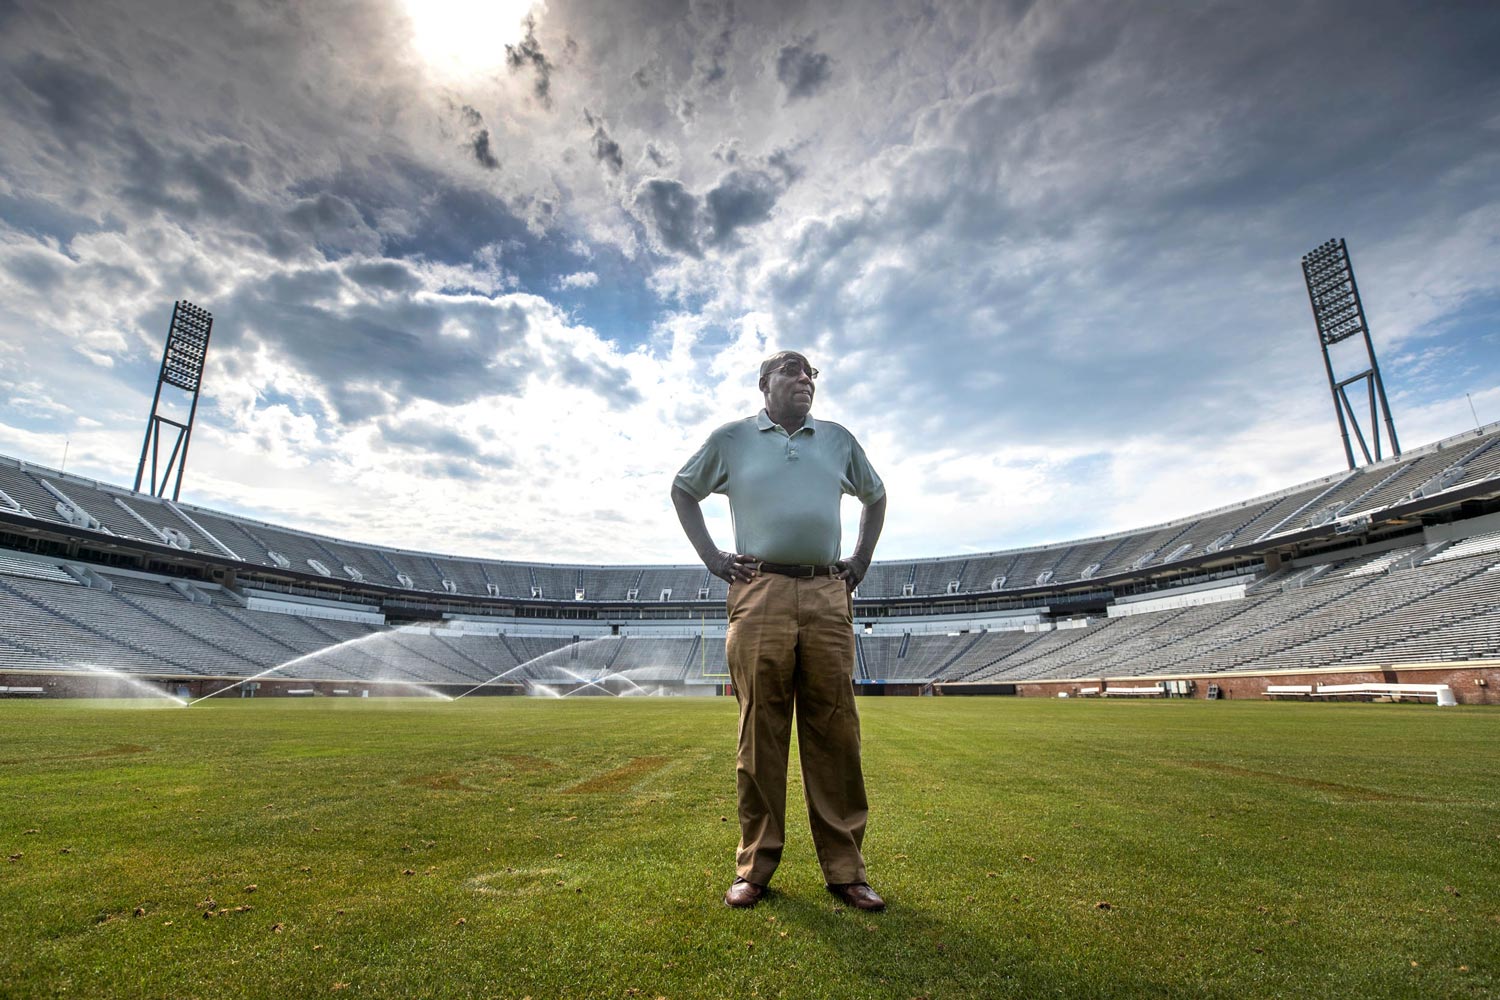 Kent Merritt stands on the UVA football field